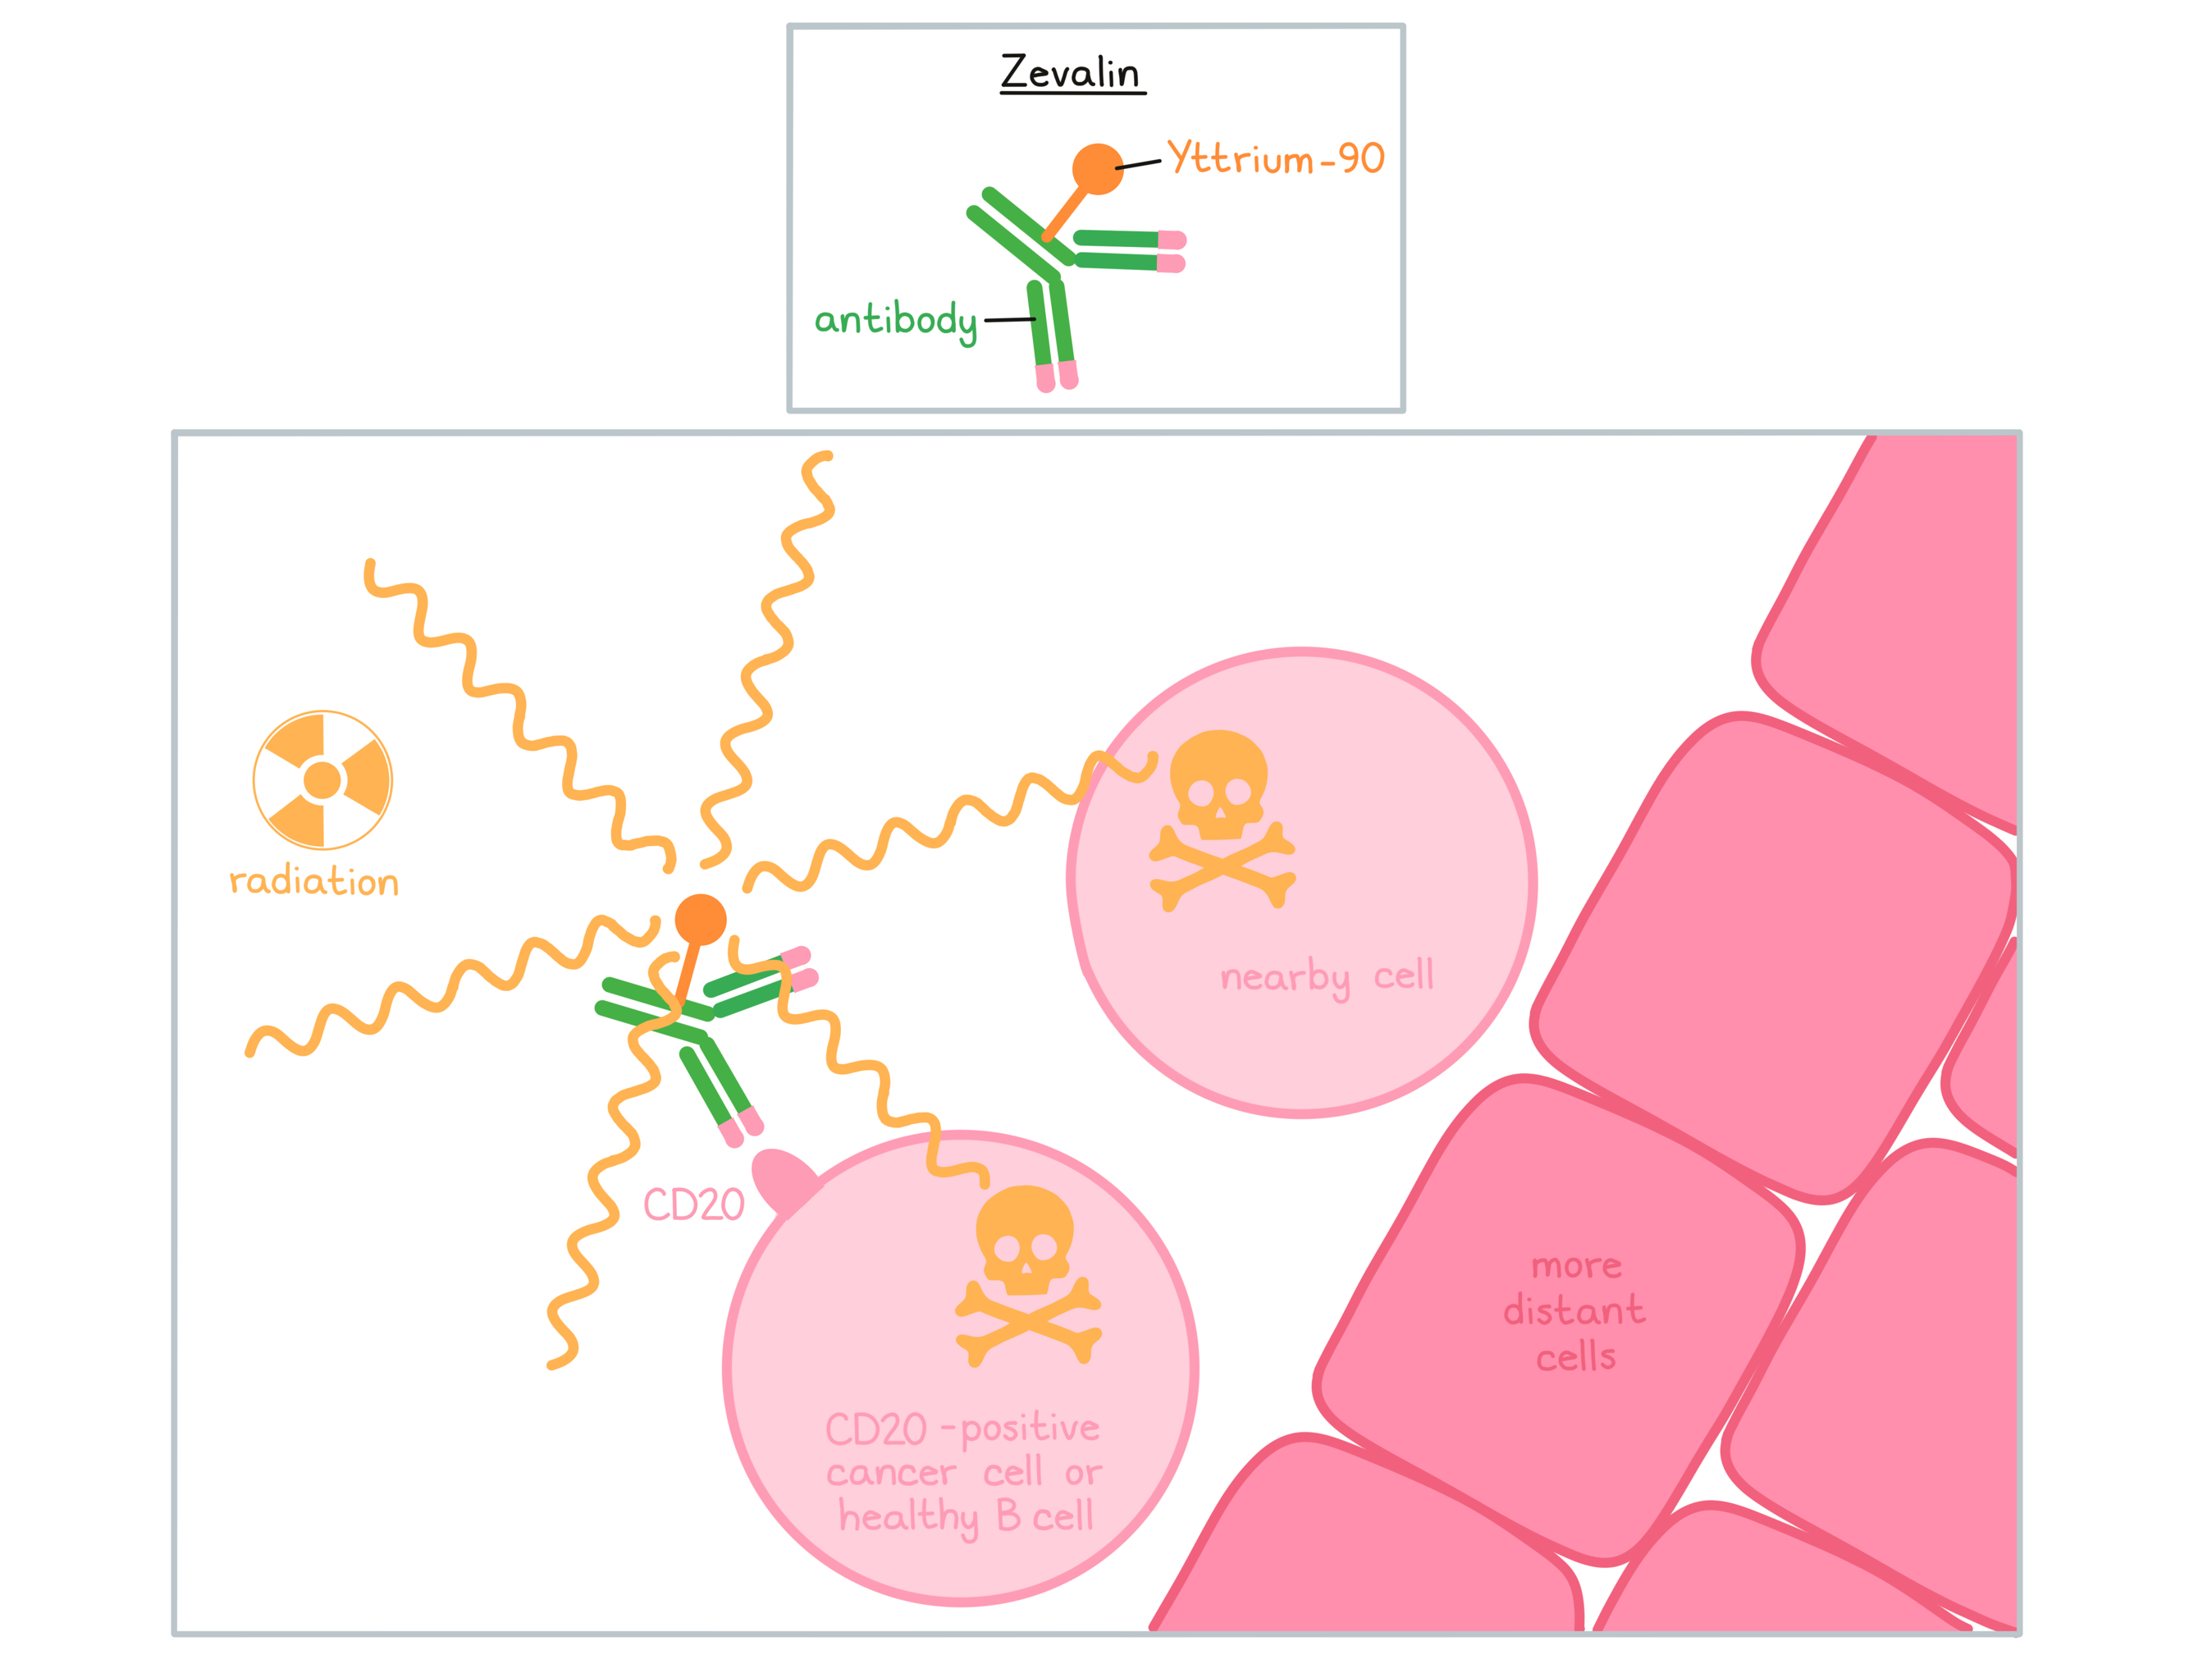 Illustration showing how Zevalin works